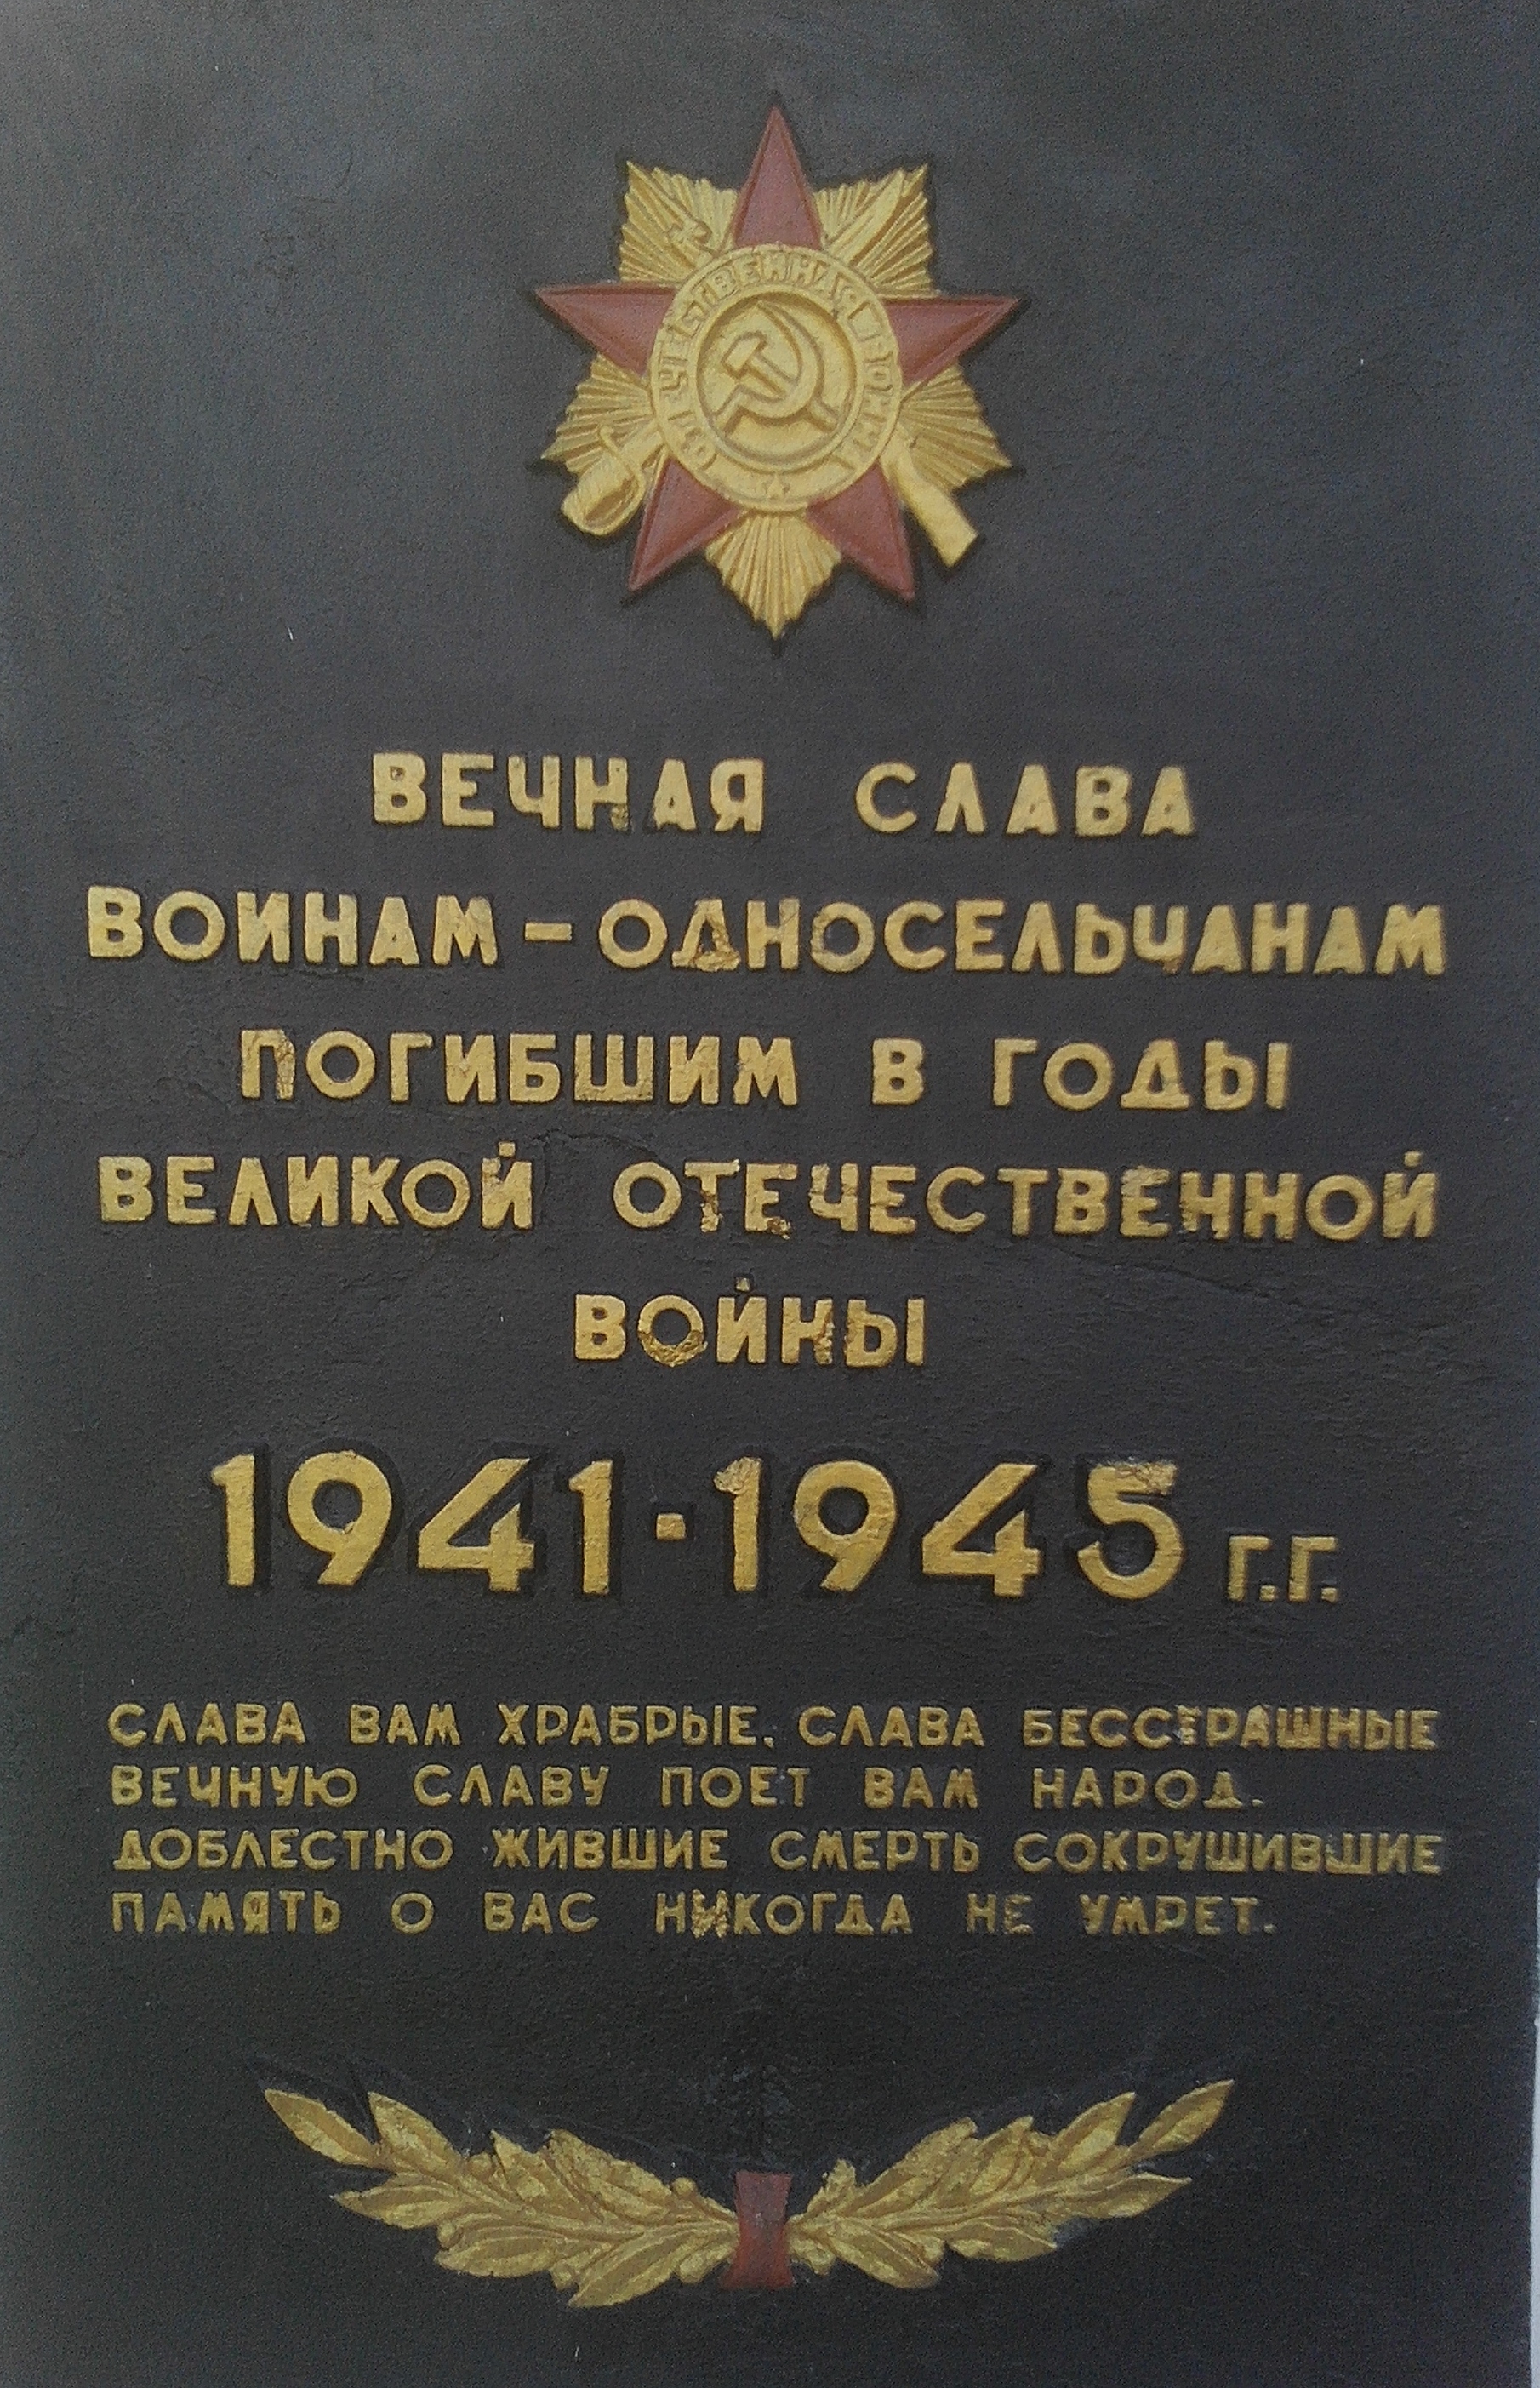 Памятник односельчанам в с. Запасное Ореховского района